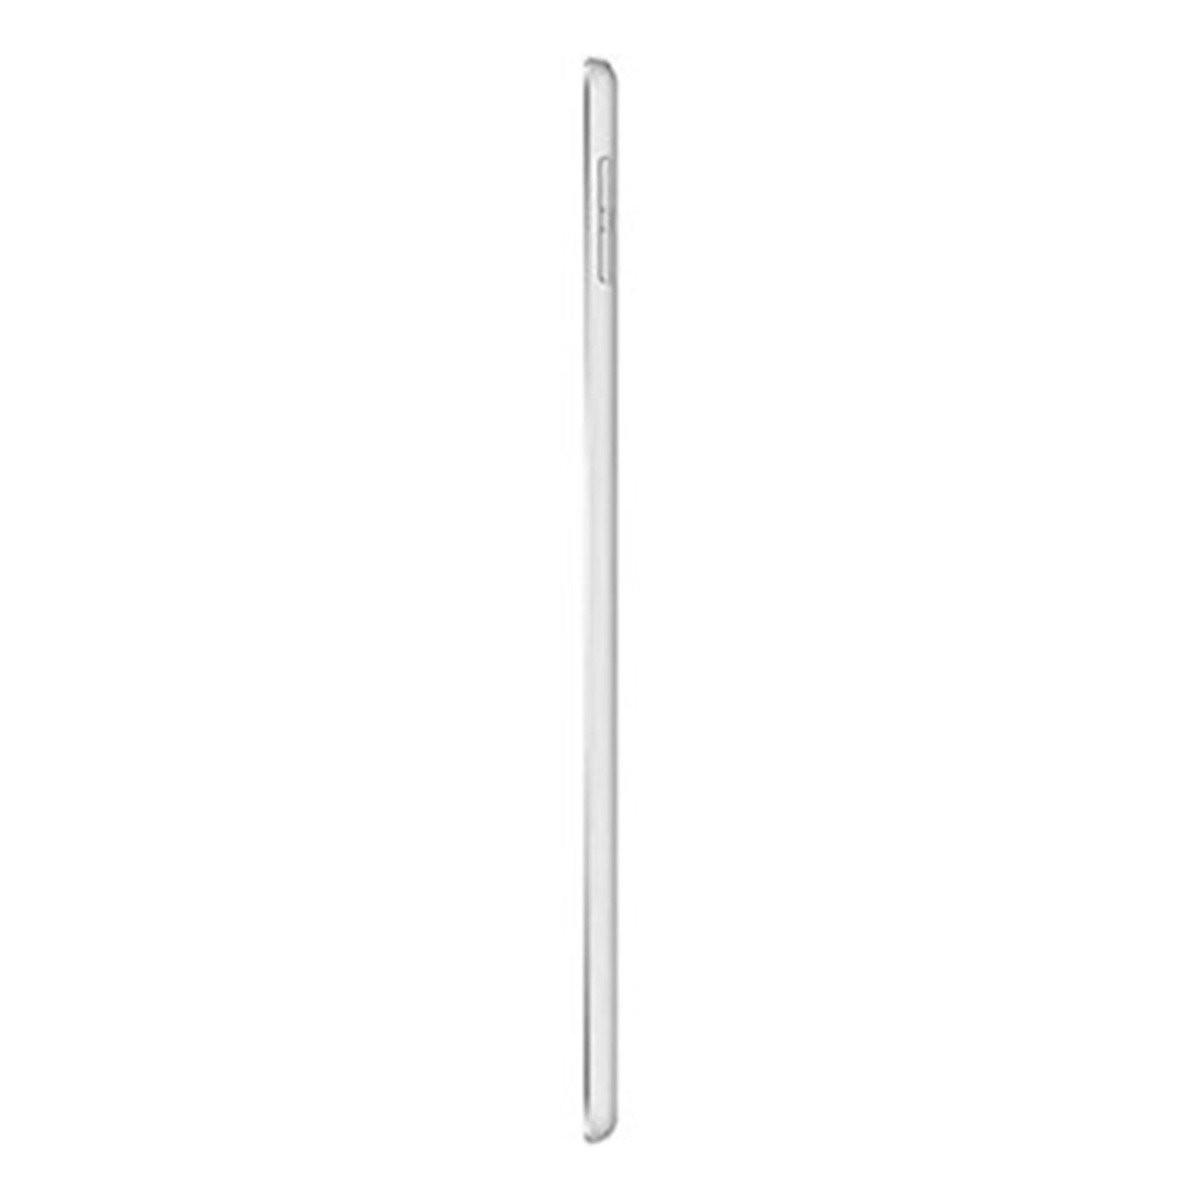 Apple iPad Mini (Wi-Fi, 256GB) Silver